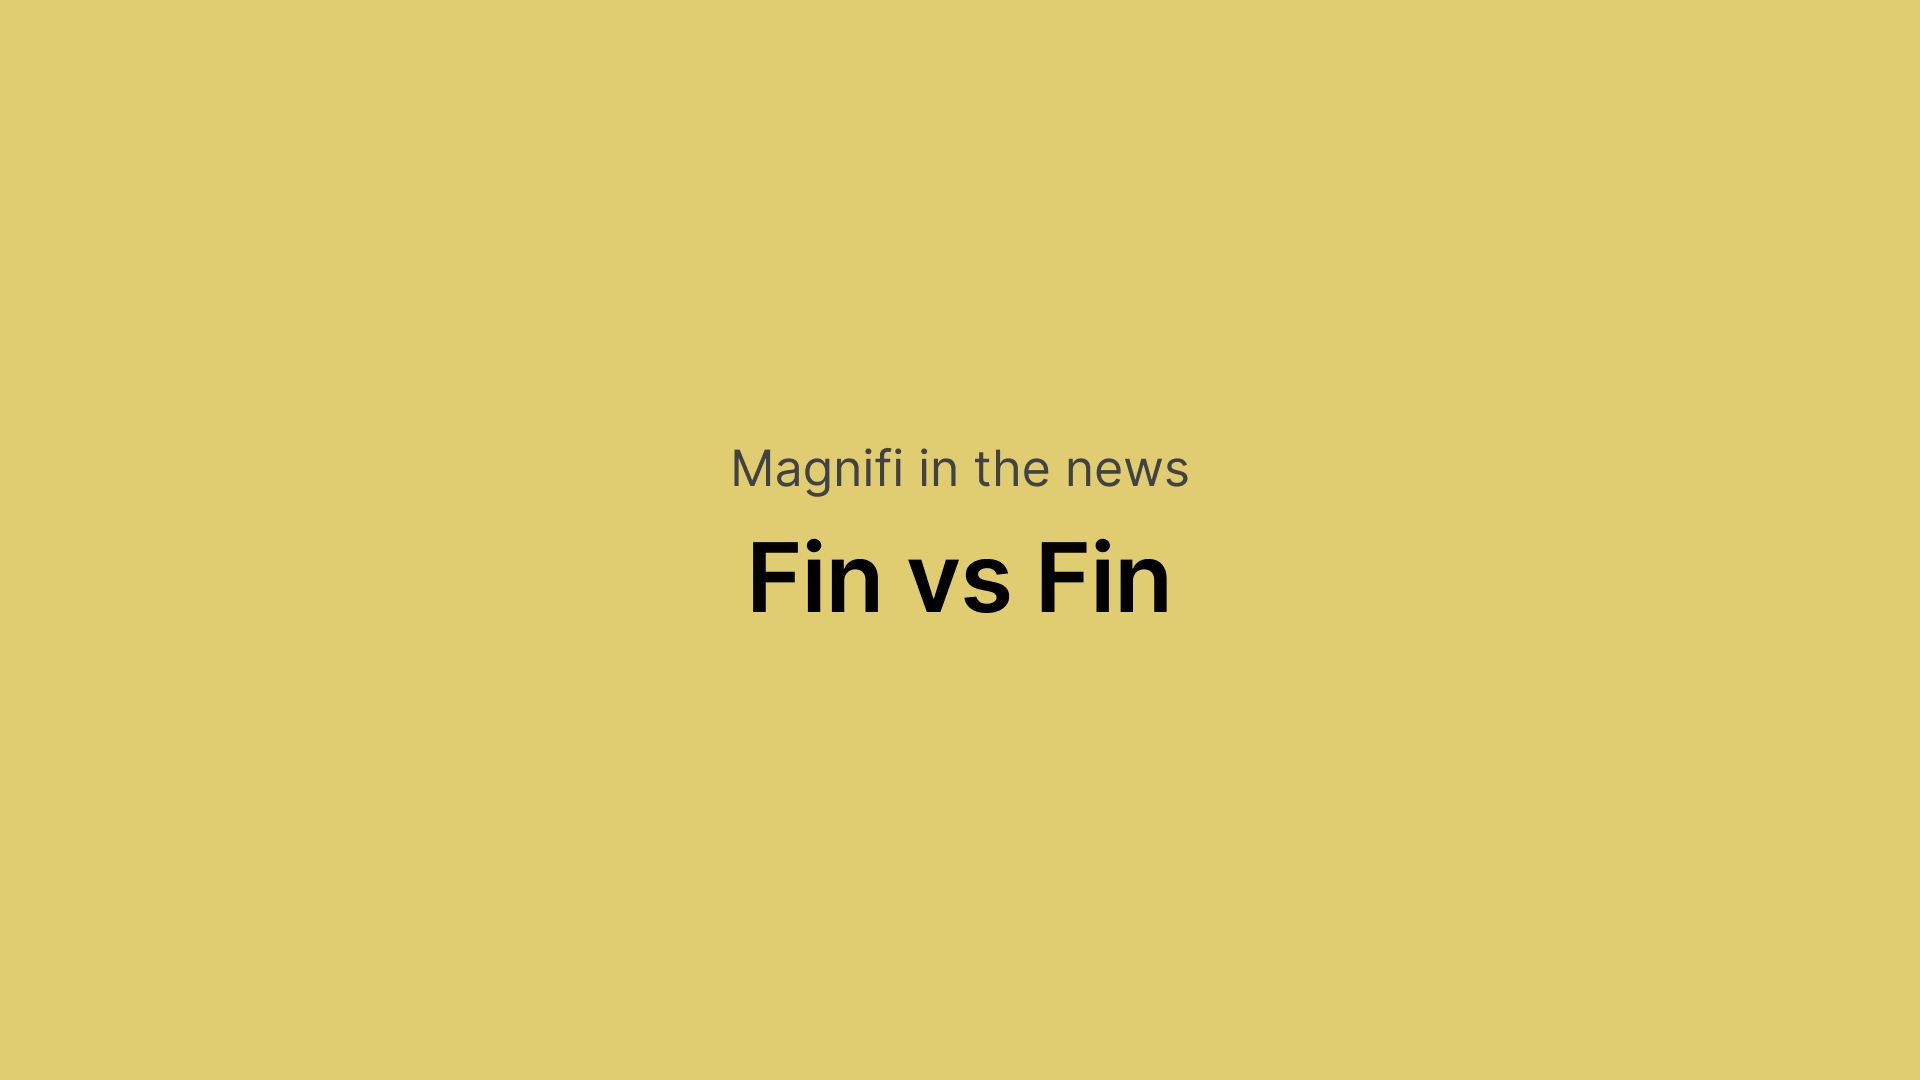 Magnifi in the news
Fin vs Fin